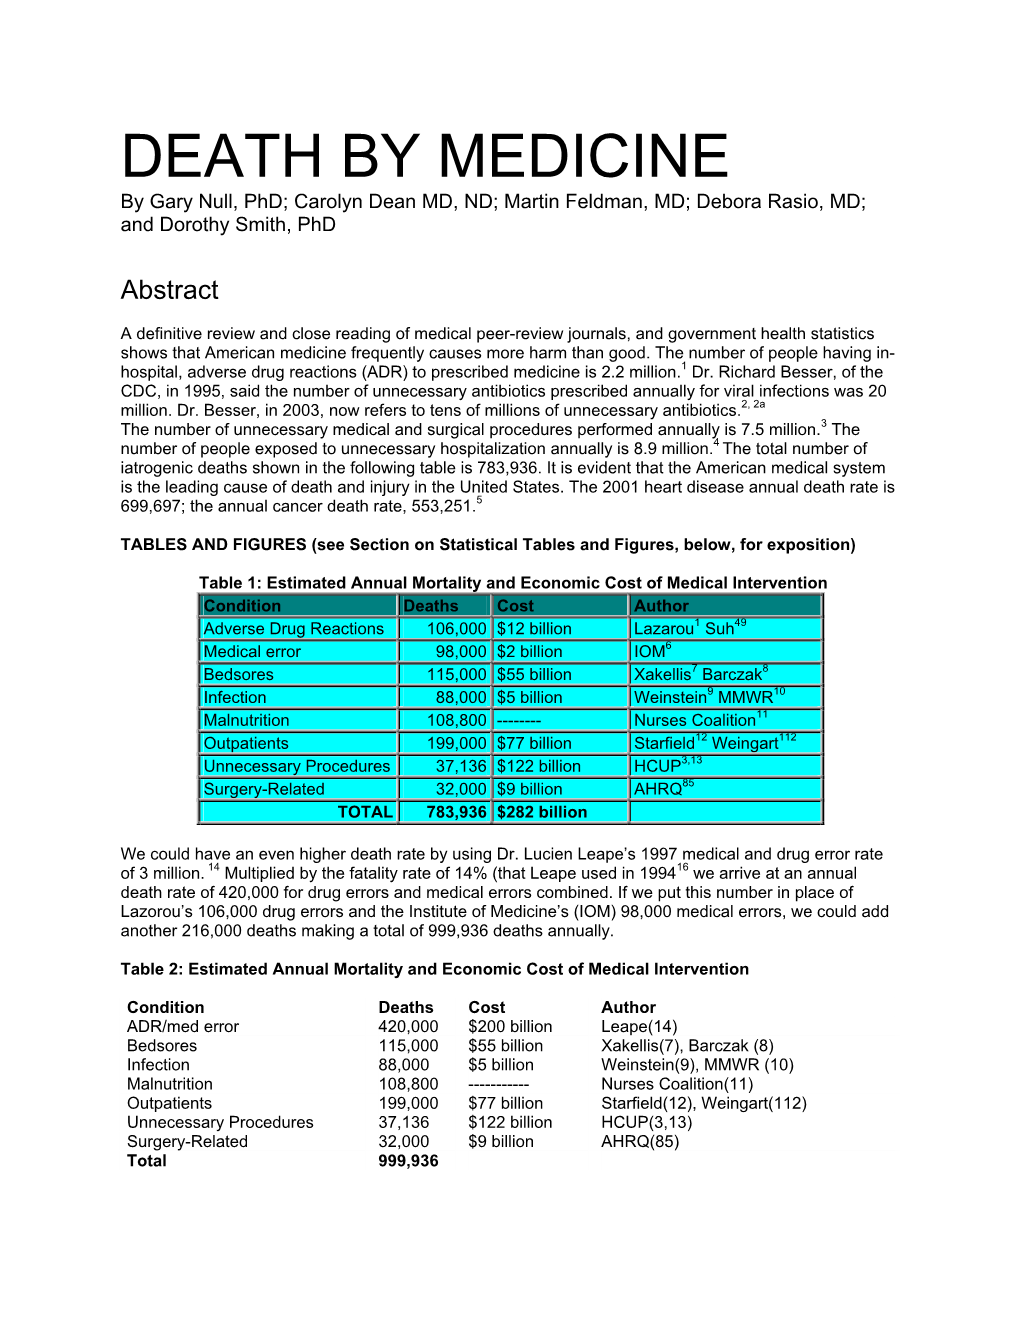 DEATH by MEDICINE by Gary Null, Phd; Carolyn Dean MD, ND; Martin Feldman, MD; Debora Rasio, MD; and Dorothy Smith, Phd